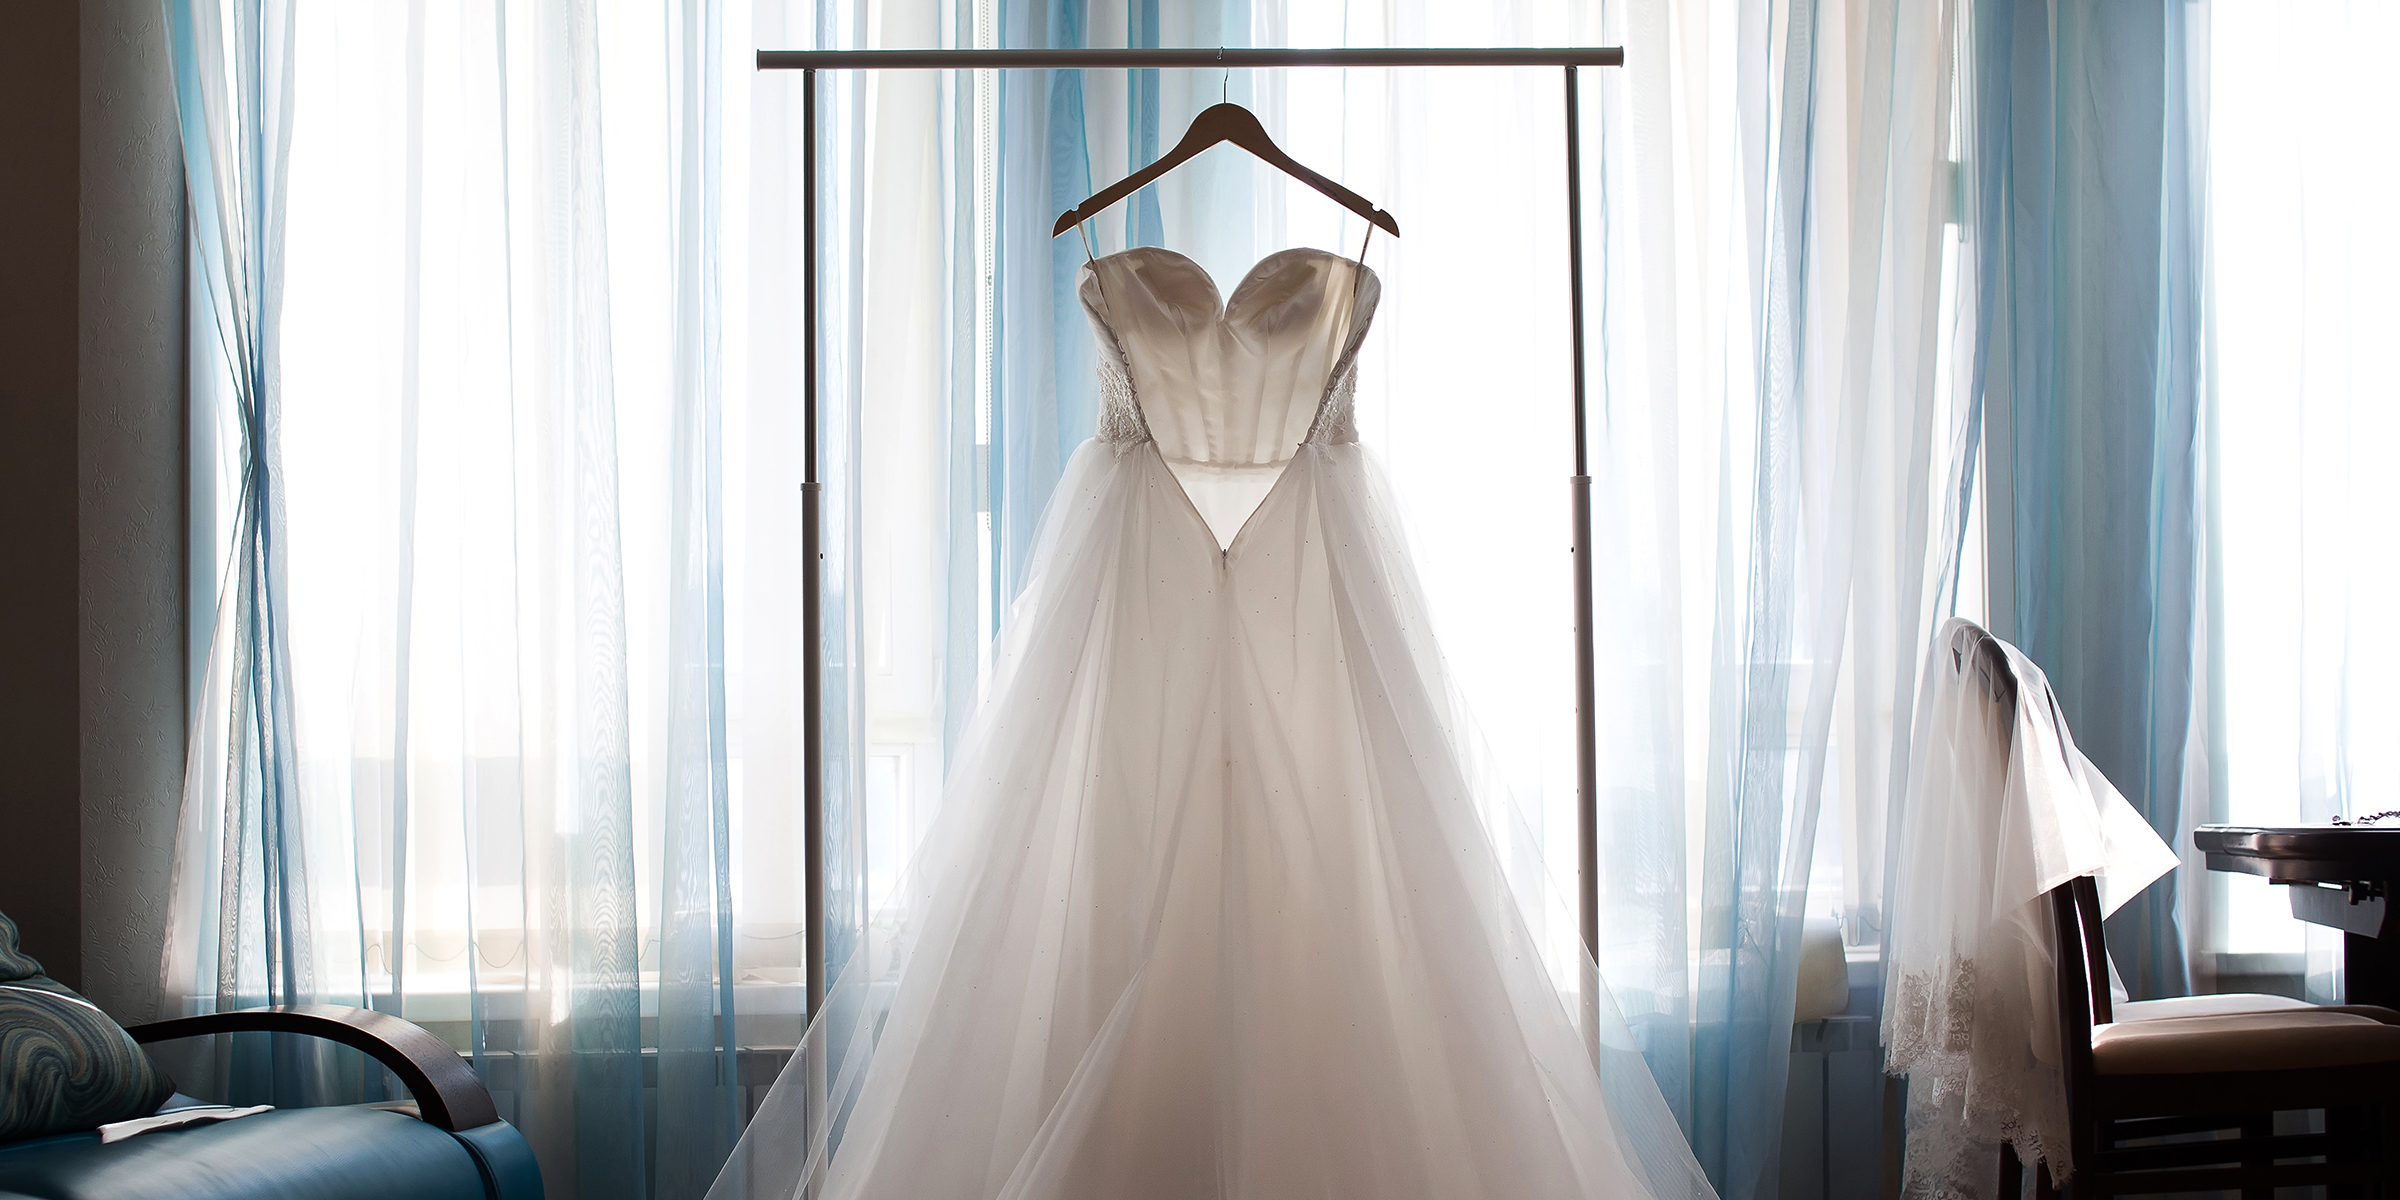 A wedding dress | Source: Shutterstock